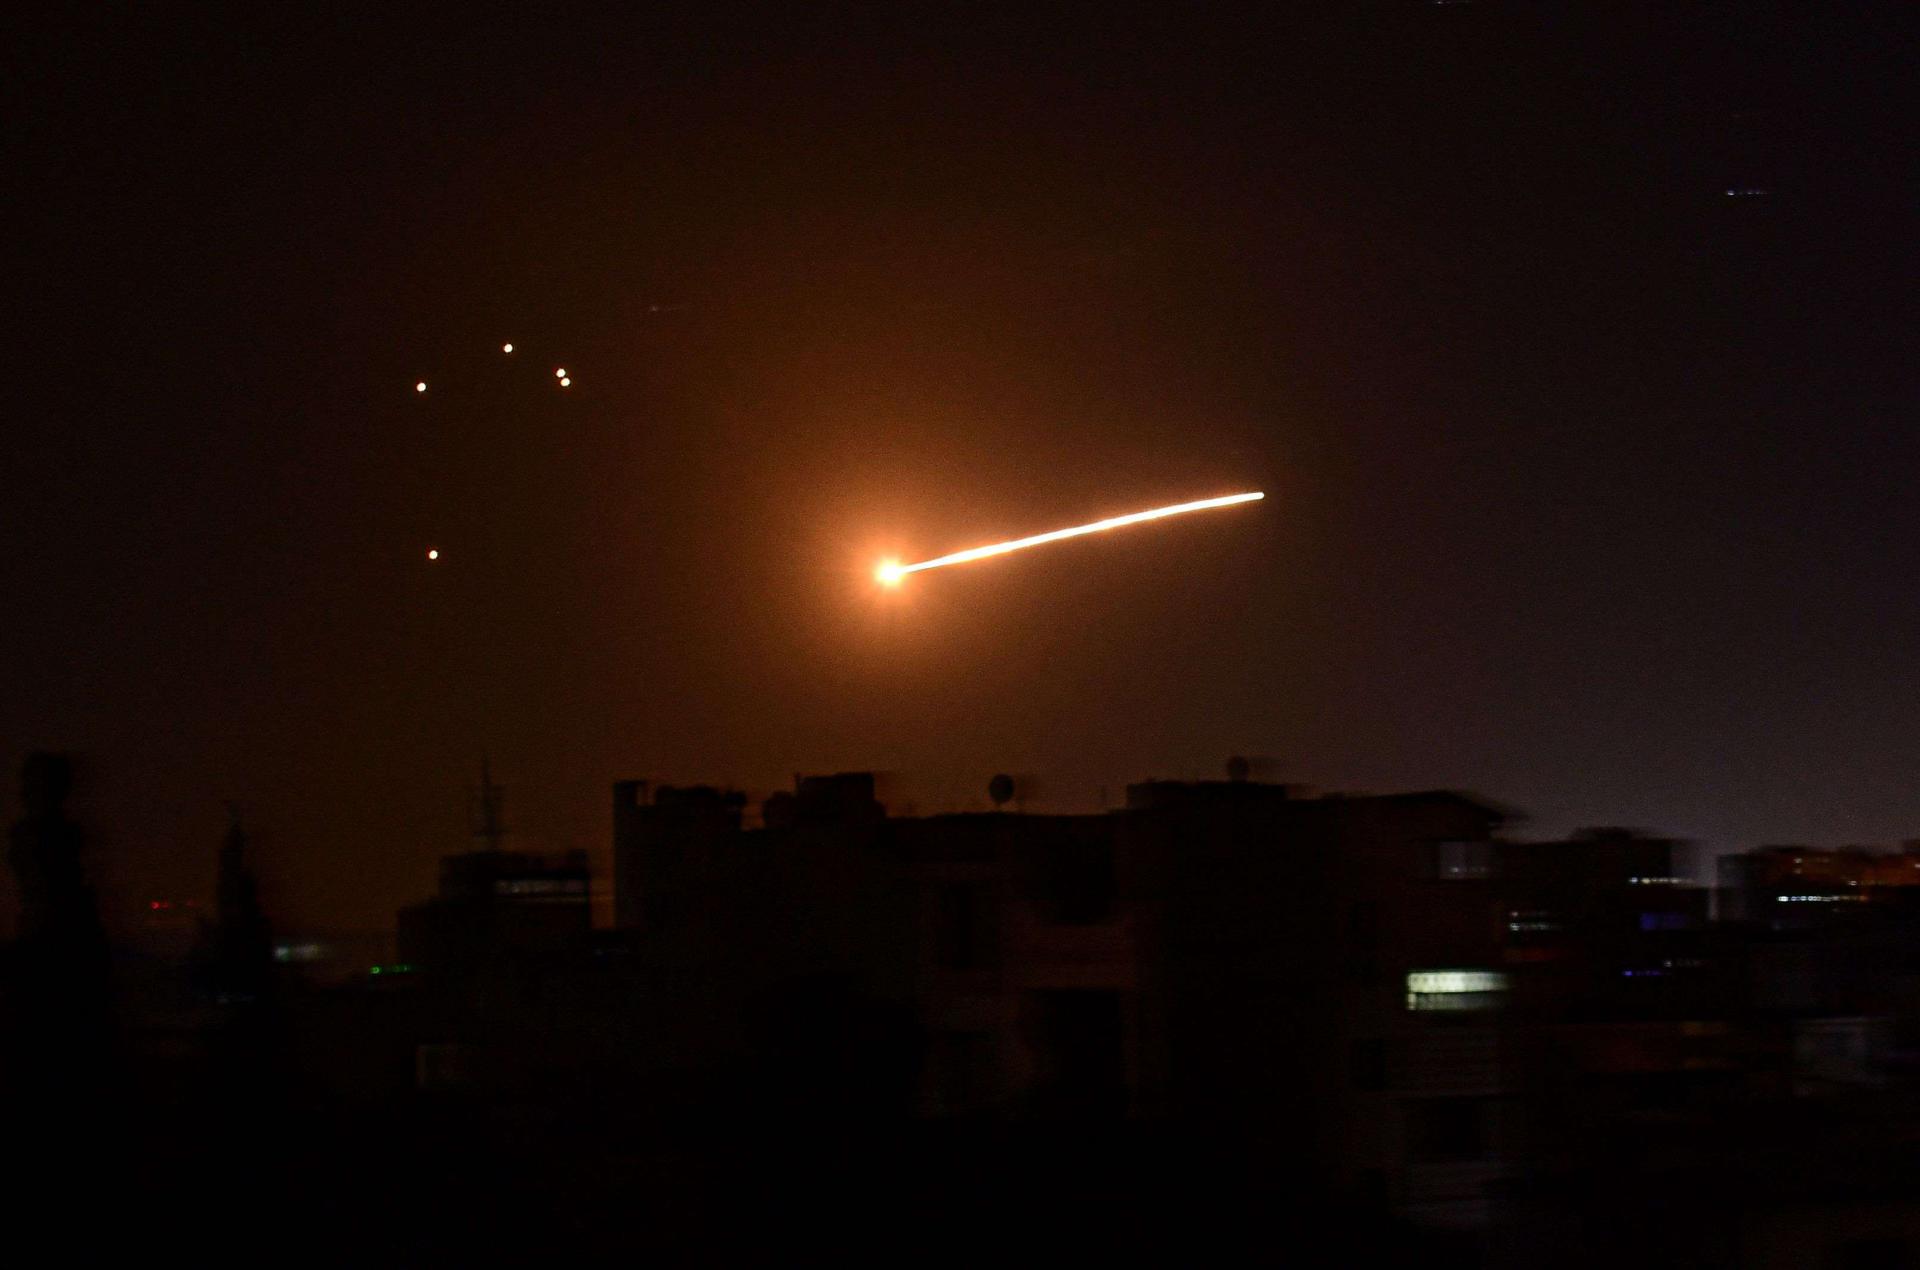 اسرائيل وجهت ضربات جوية لسوريا 3 مرات على الاقل خلال ابريل